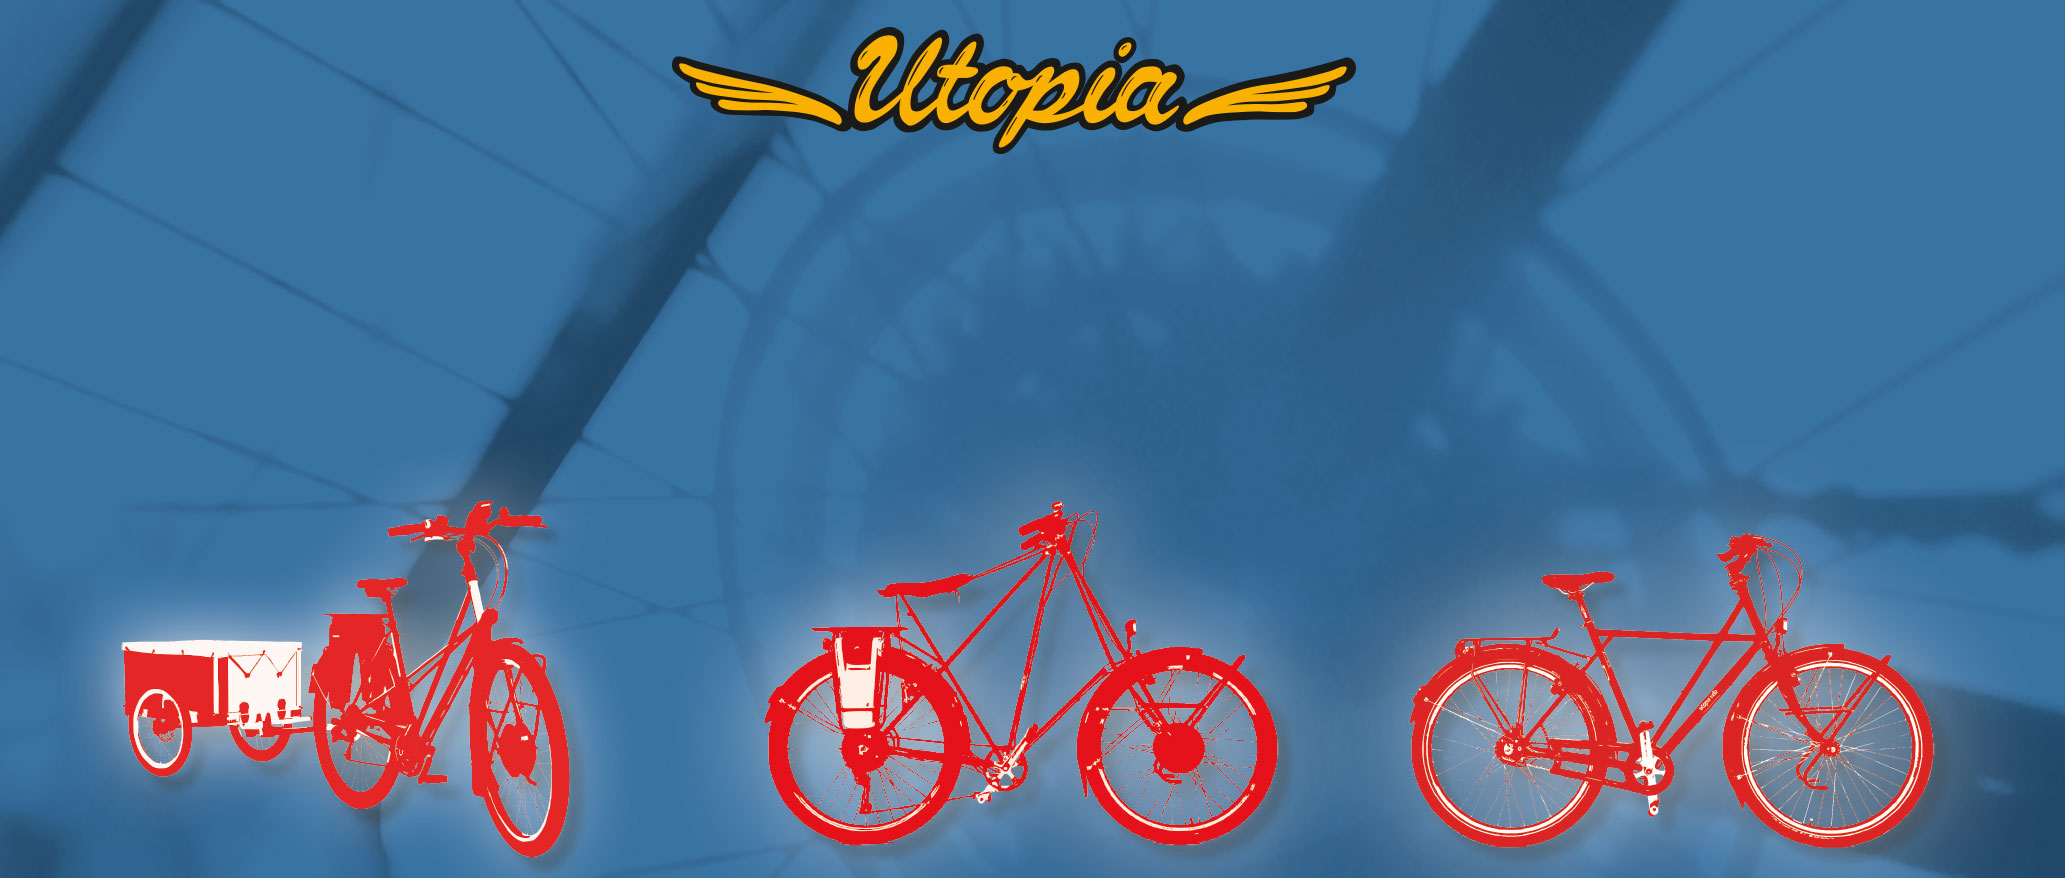 Utopia Frontbild auf der Startseite